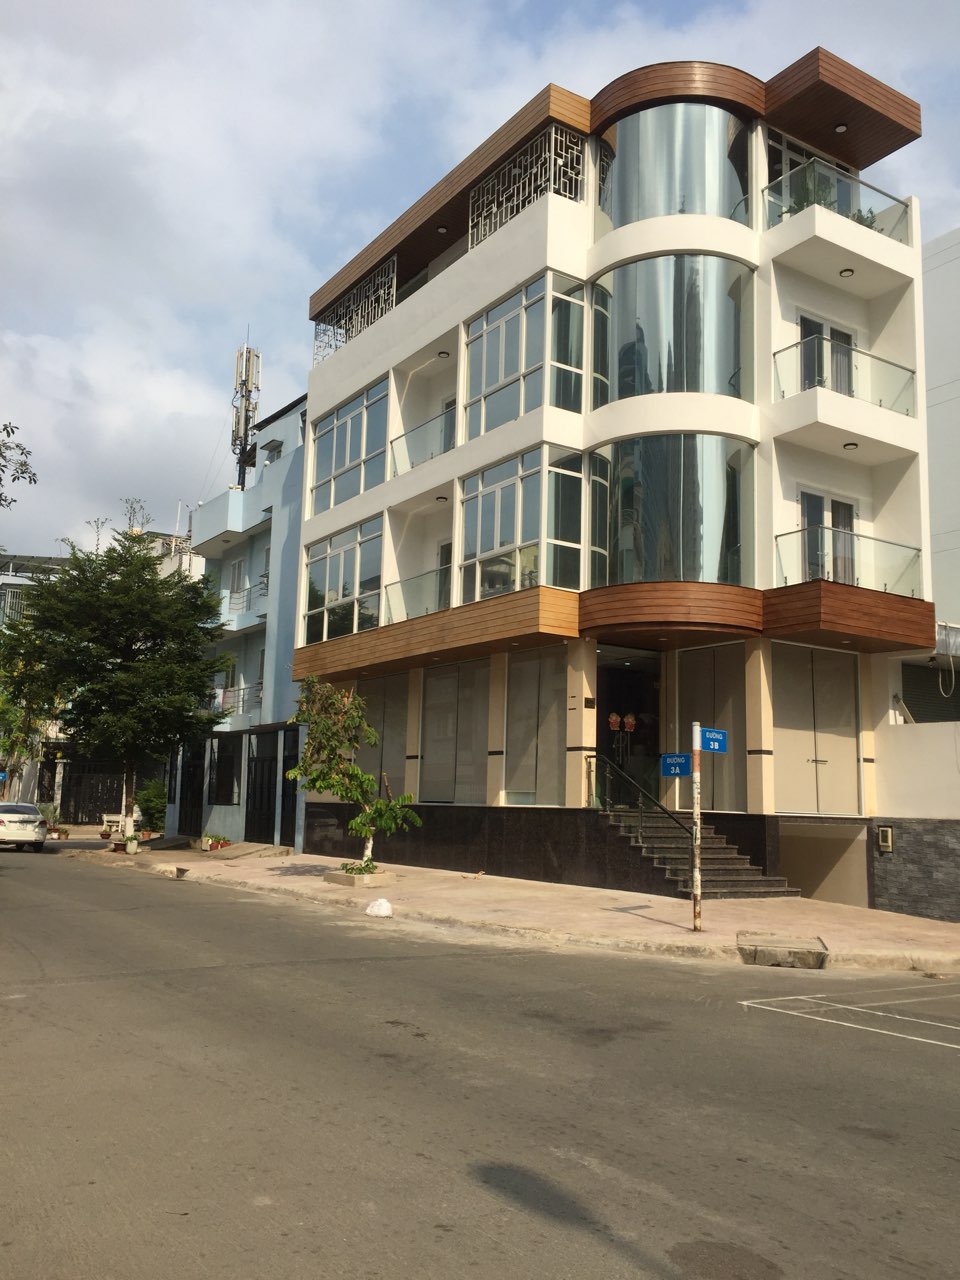 Cần bán nhà phố mới xây góc hai mặt tiền khu TDC HIMLAM KÊNH TẺ QUẬN 7 090.13.23.176 THÙY 10151667